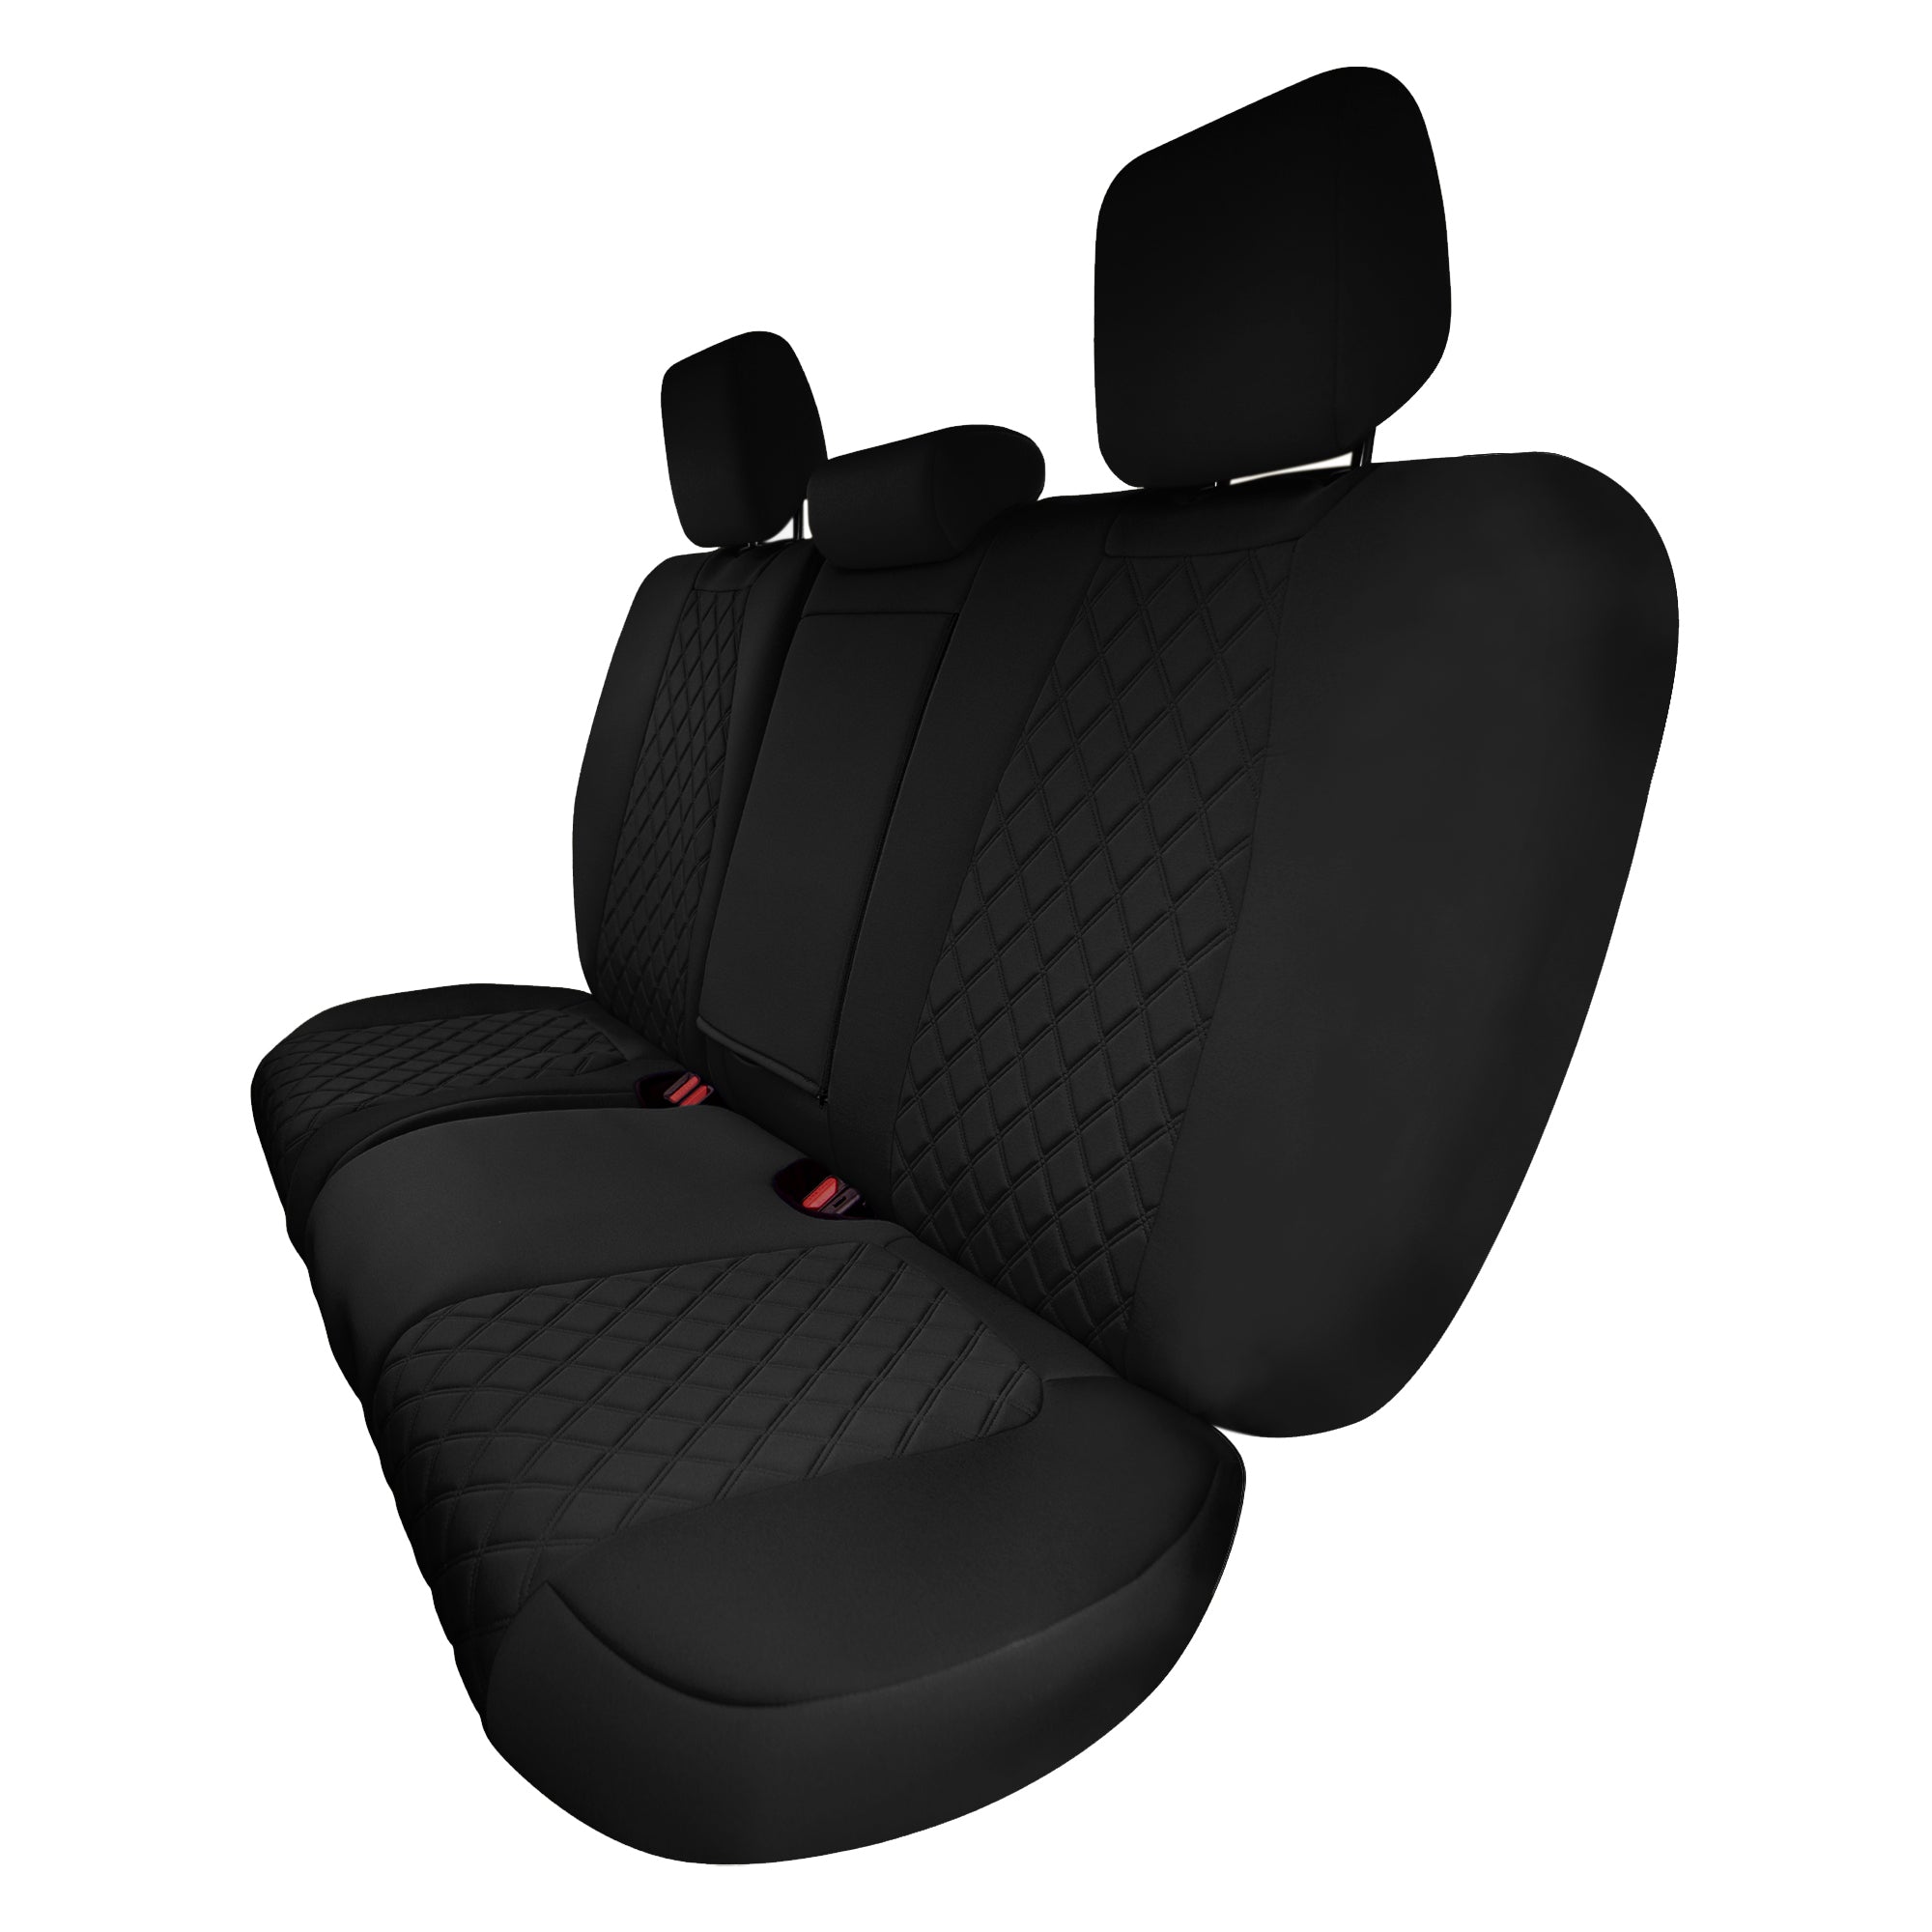 Honda CR-V 2017-2022 - Rear Row Set Seat Covers -  Black Ultraflex Neoprene